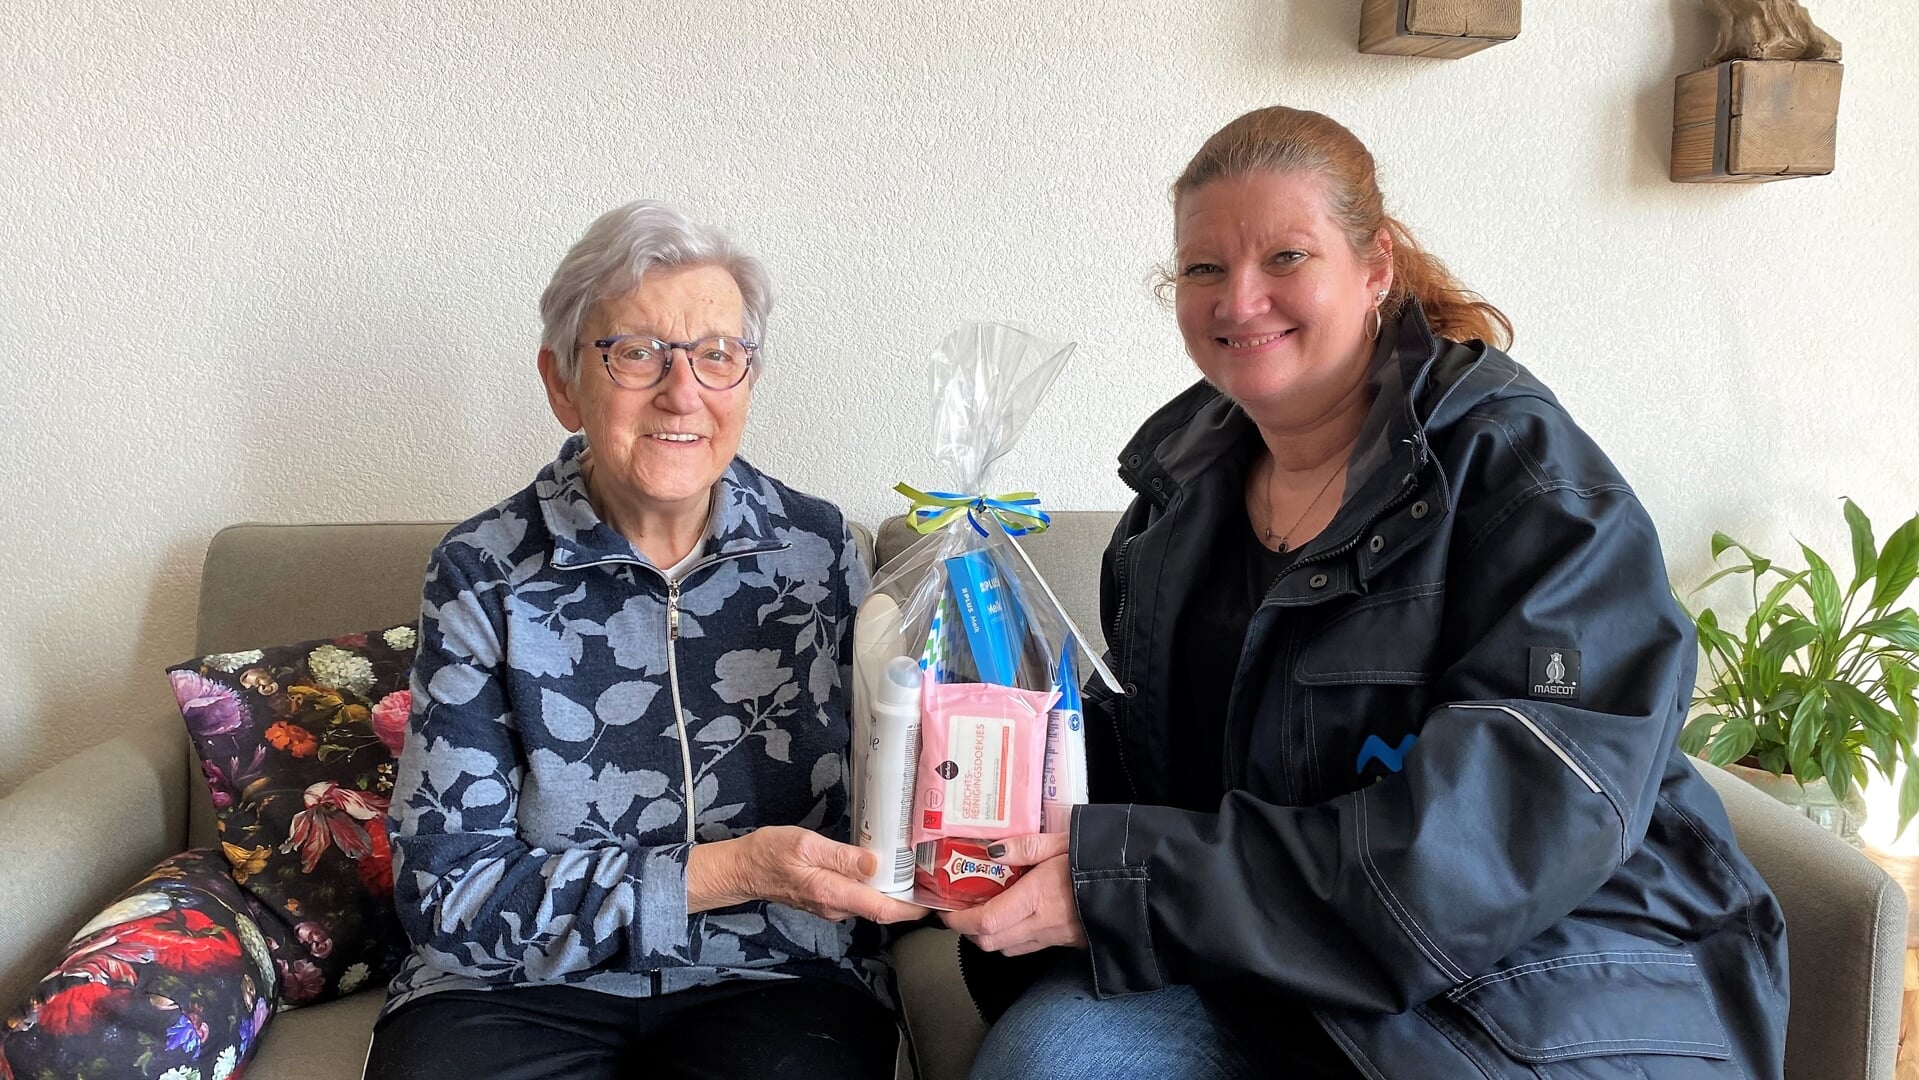 Wijkbeheerder Tanja van der Wal biedt mevrouw van Klink een pakketje aan namens een dankbare buur.